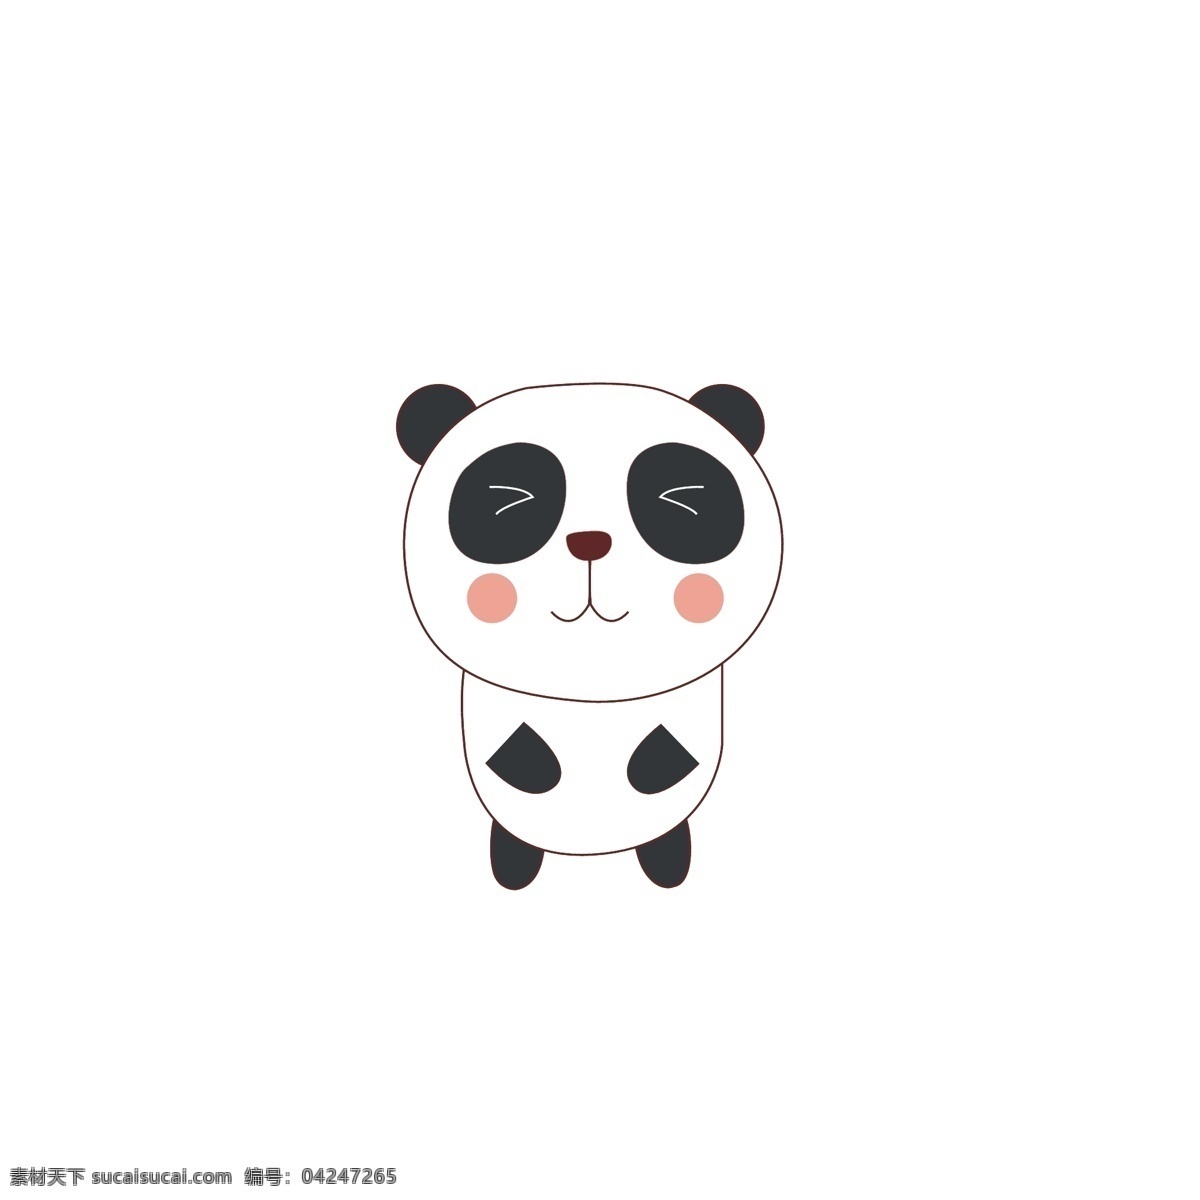 原创 手绘 卡通 动物 熊猫 手绘熊猫 卡通熊猫 小动物 国宝 可爱动物